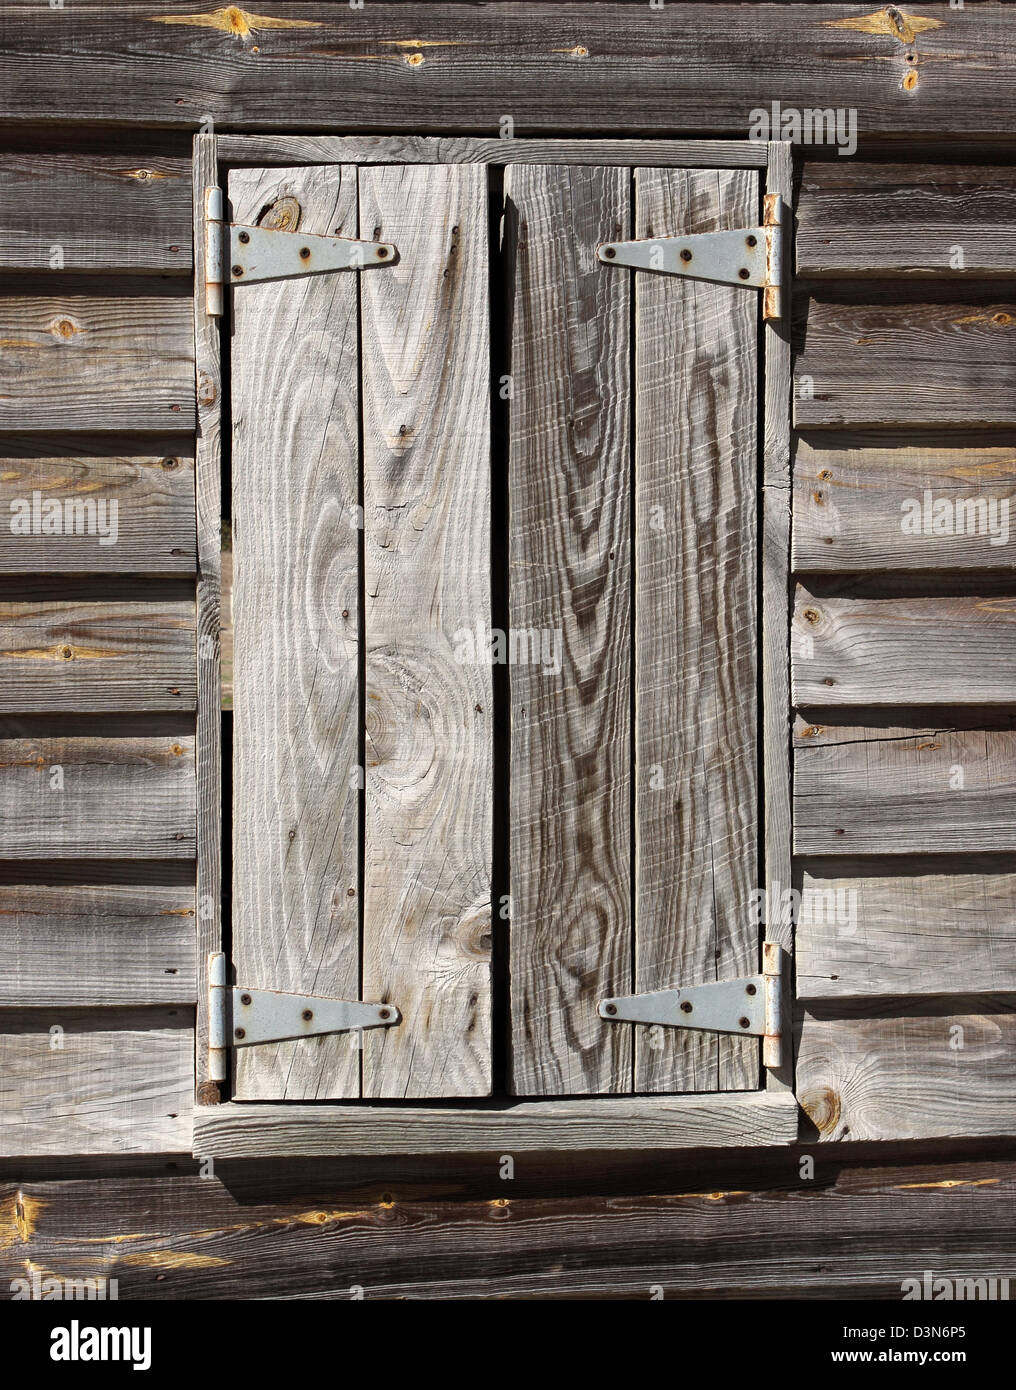 Eine alte und Wetter geschlagen Hurrikan-Blende schützt das Innere der Hütte Unterschlupf Stockfoto